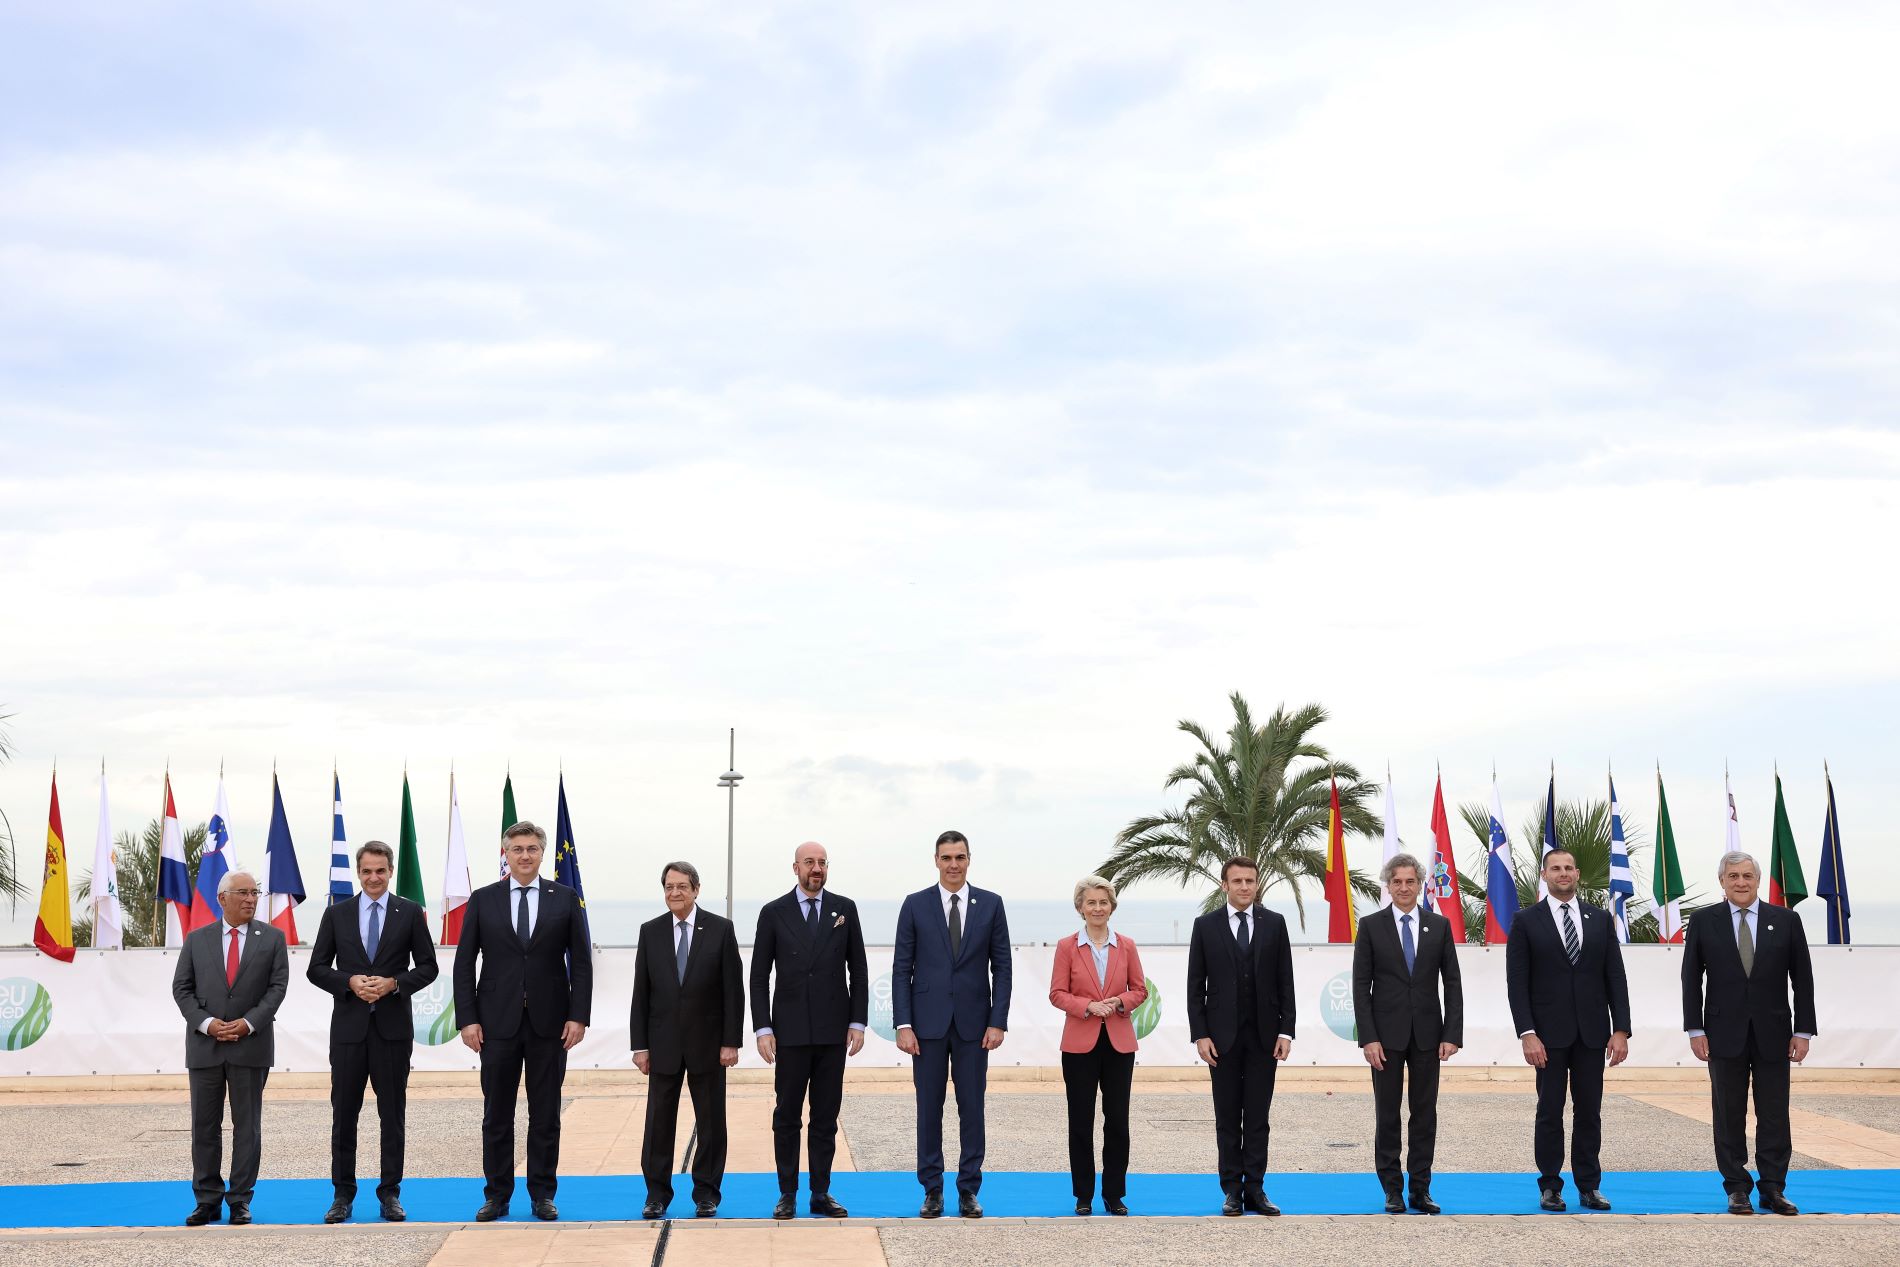 Ο Κυρ. Μητσοτάκης και οι ηγέτες που συμμετείχαν στη Σύνοδο Κορυφής EUMED-9 ©Eurokinissi